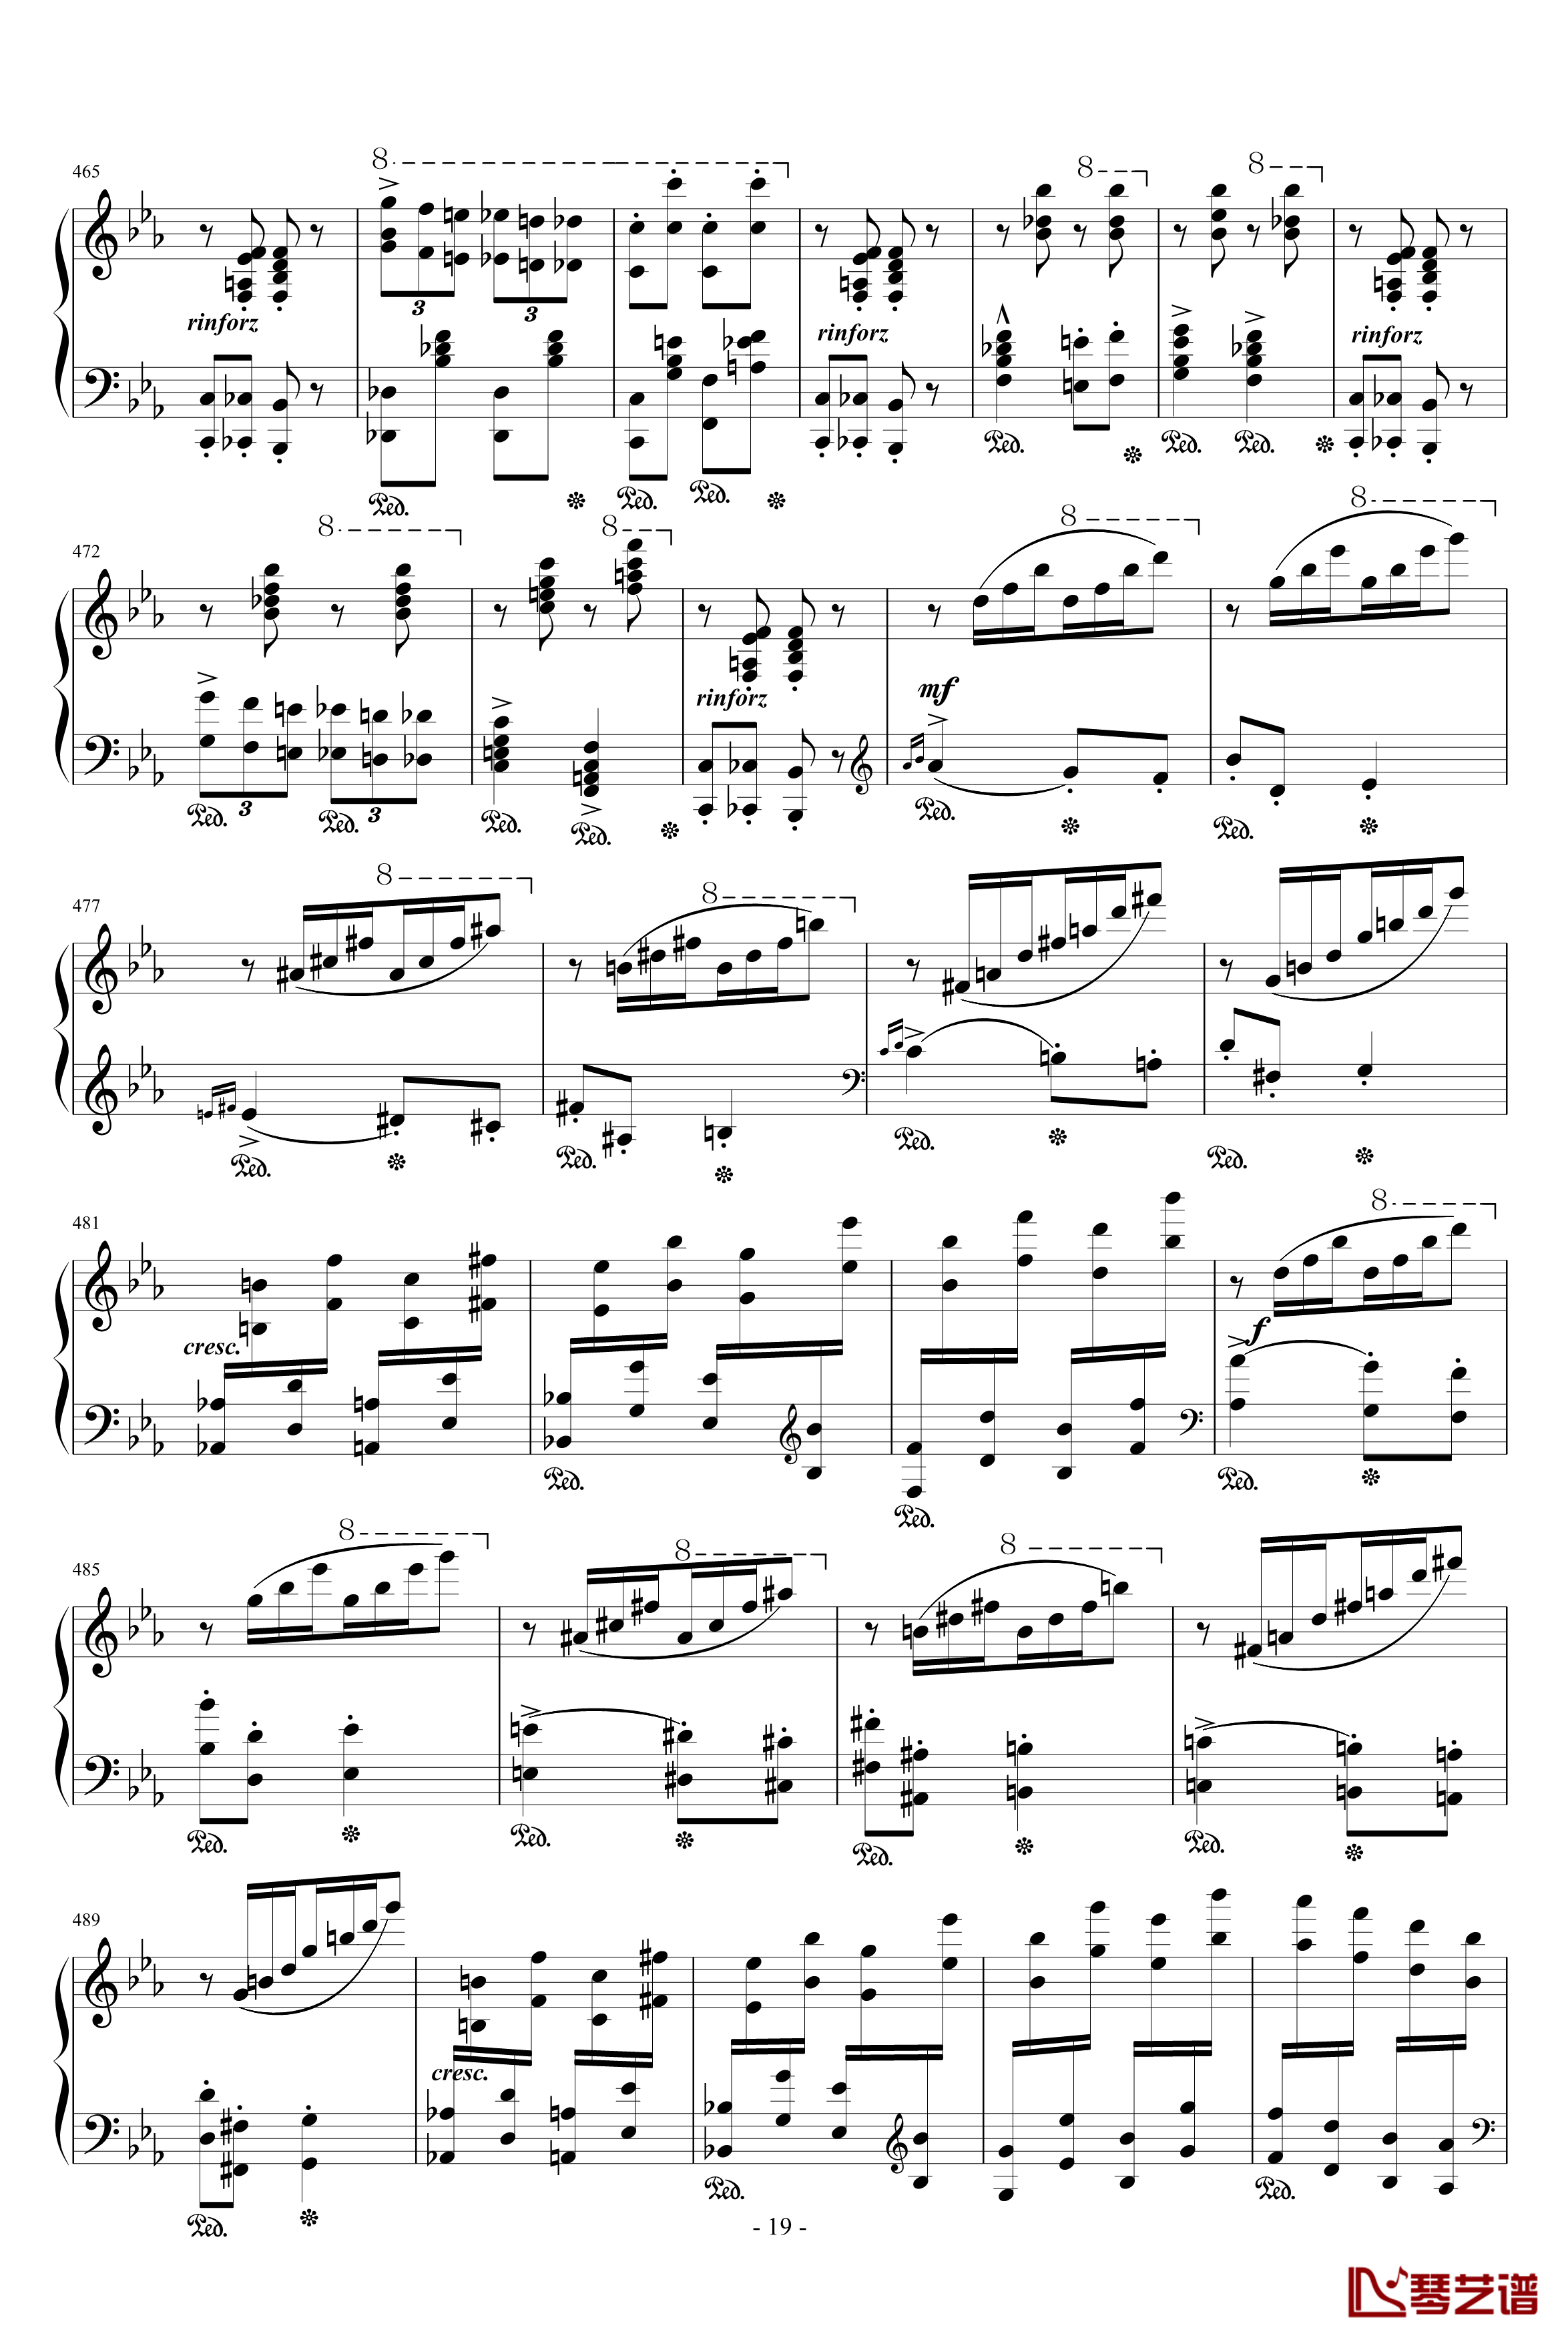 匈牙利狂想曲第9号钢琴谱-19首匈狂里篇幅最浩大、技巧最艰深的作品之一-李斯特19